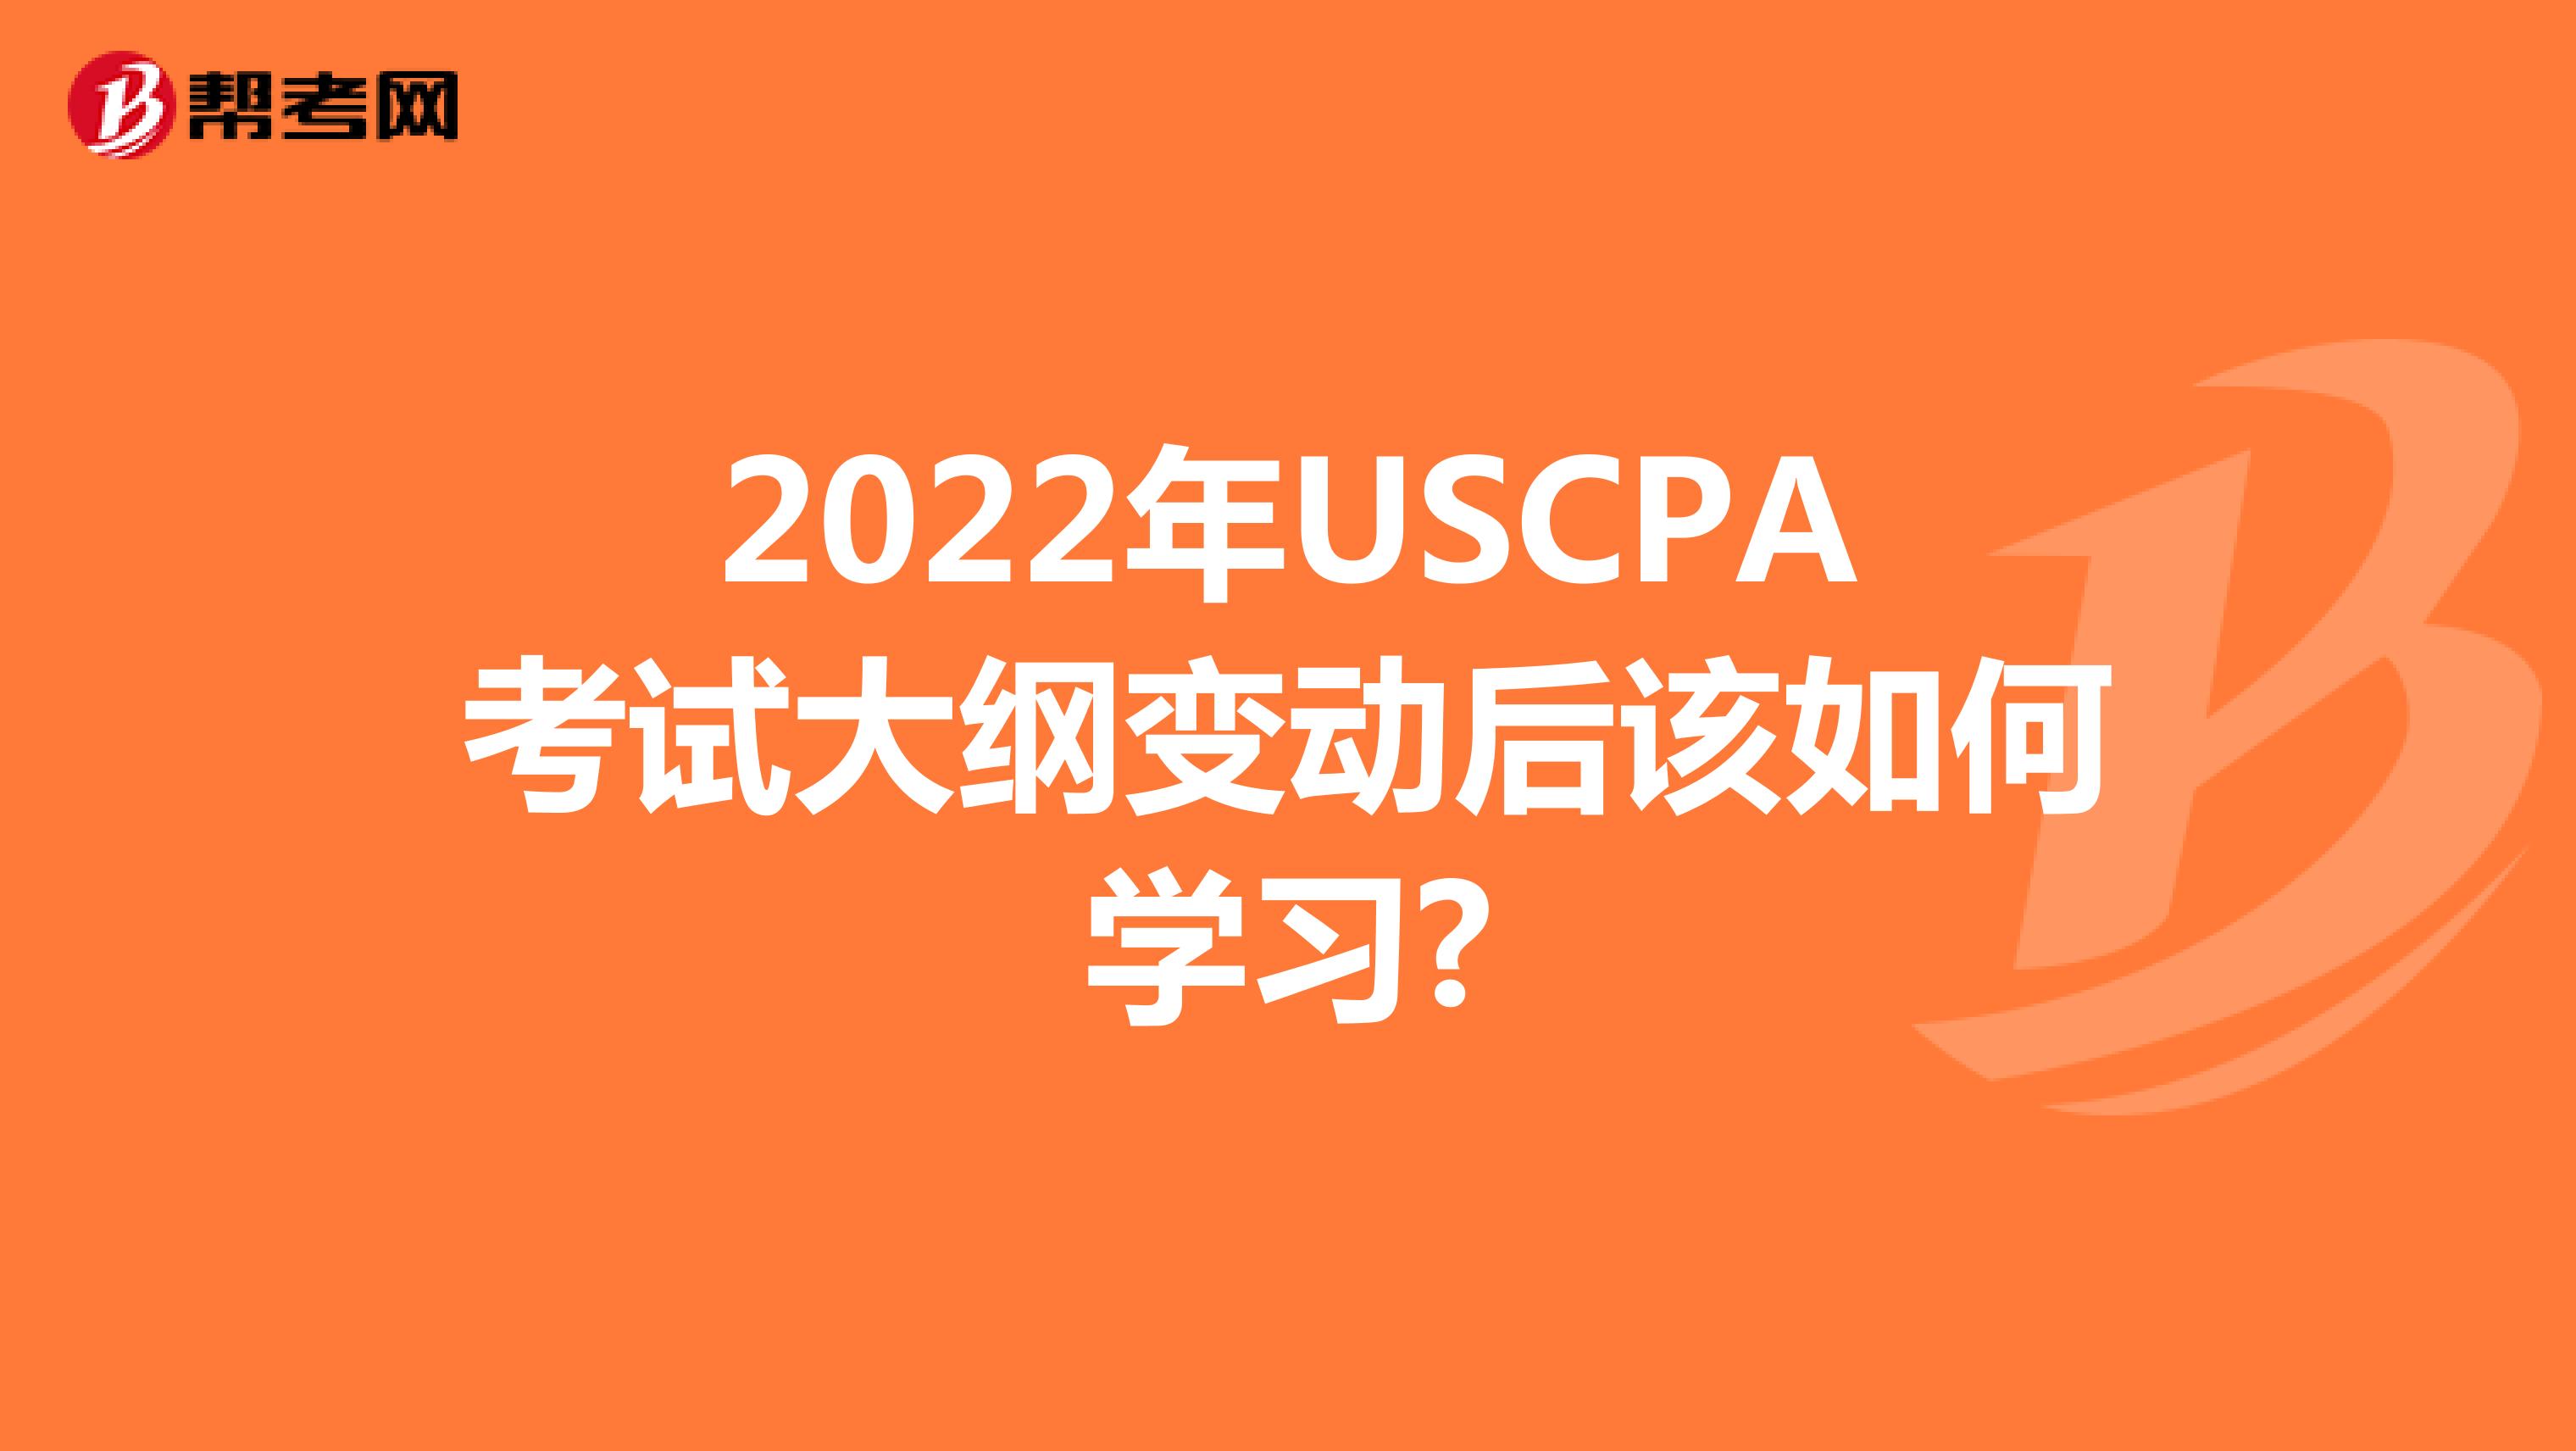 2022年USCPA考试大纲变动后该如何学习?